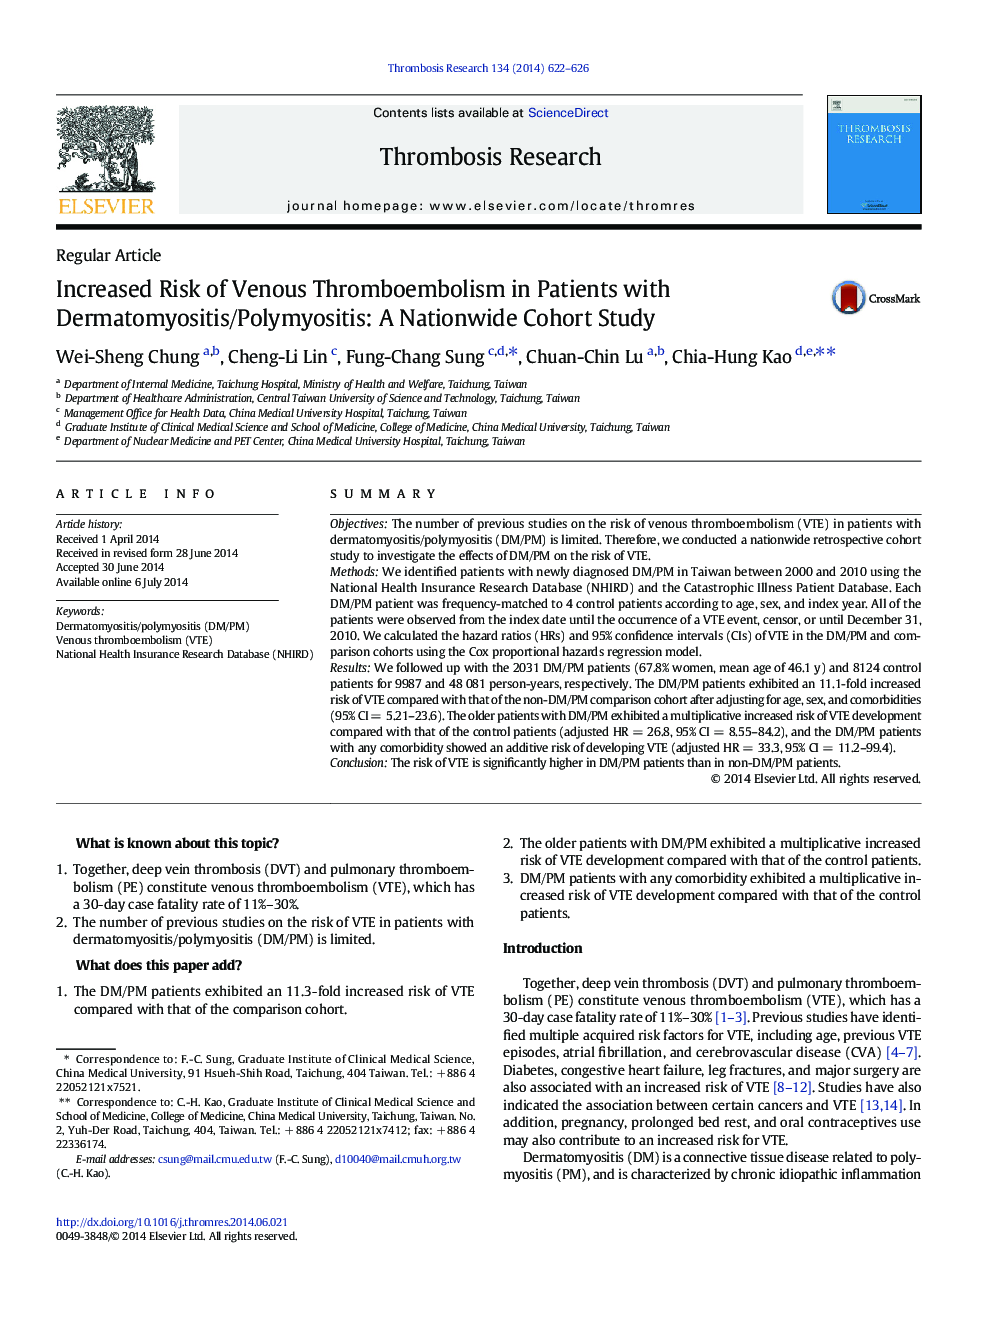 افزایش خطر ابتلا به ترومبوآمبولی وریدی در بیماران مبتلا به درماتومیوزیت / پلیمیوزیت: مطالعه همگروه در سراسر کشور 